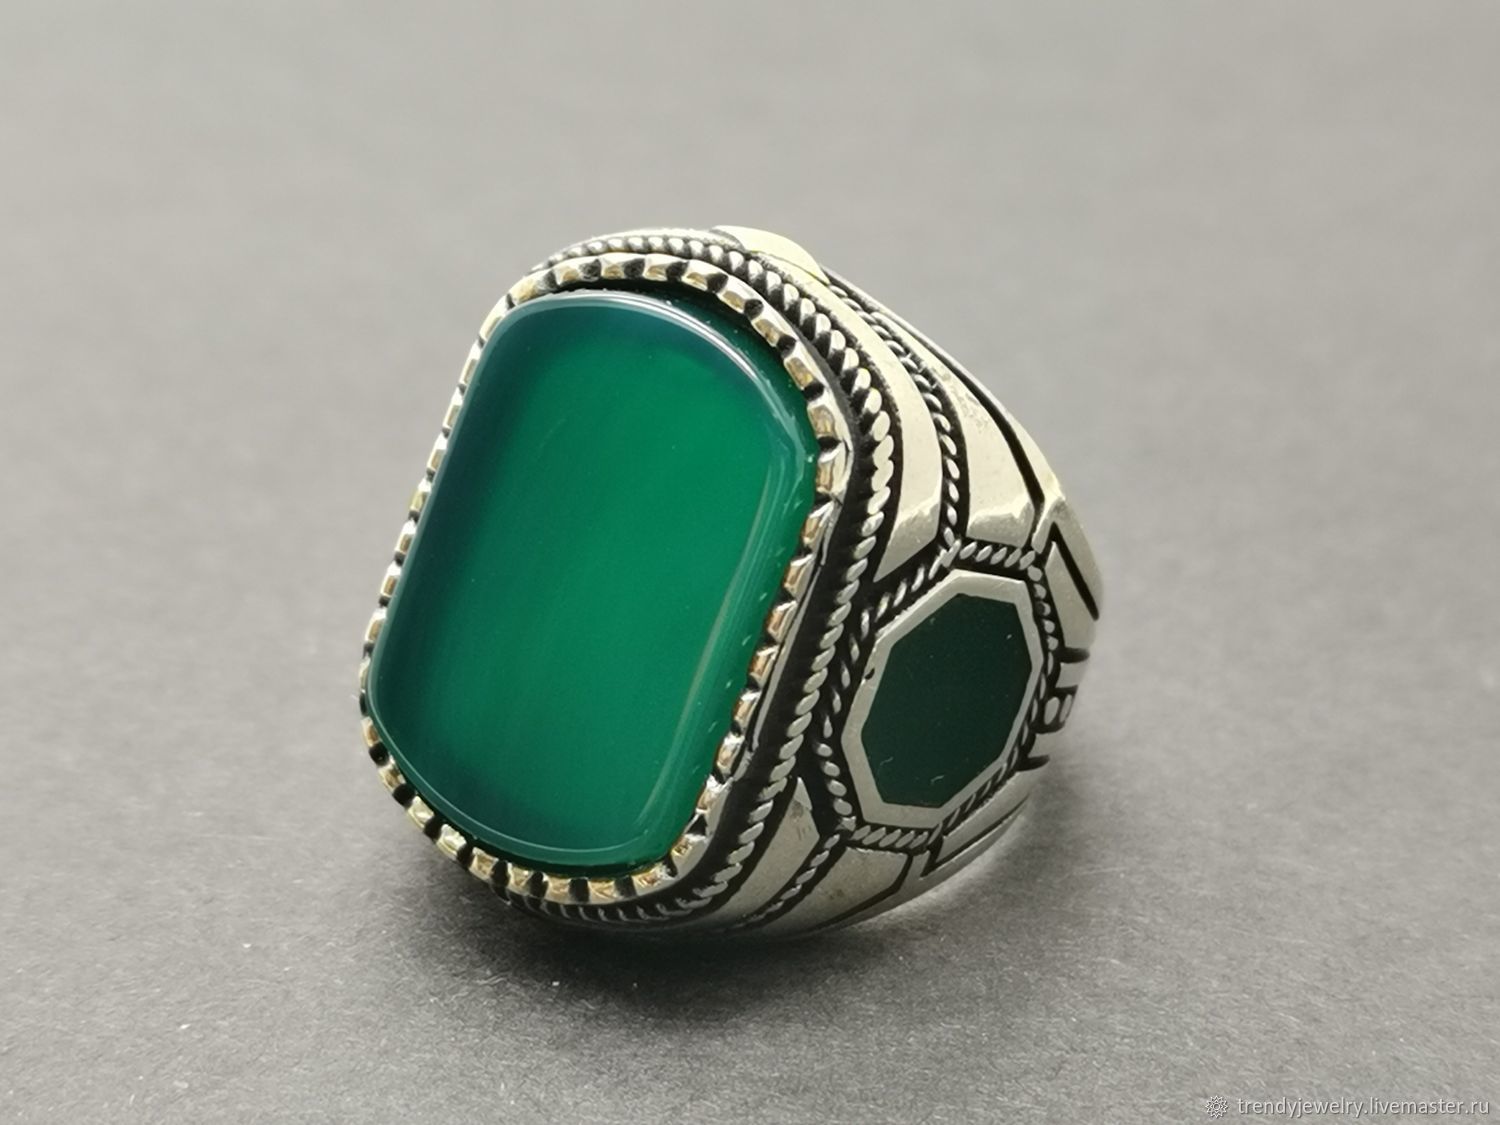 Перстень с зеленым камнем мужской